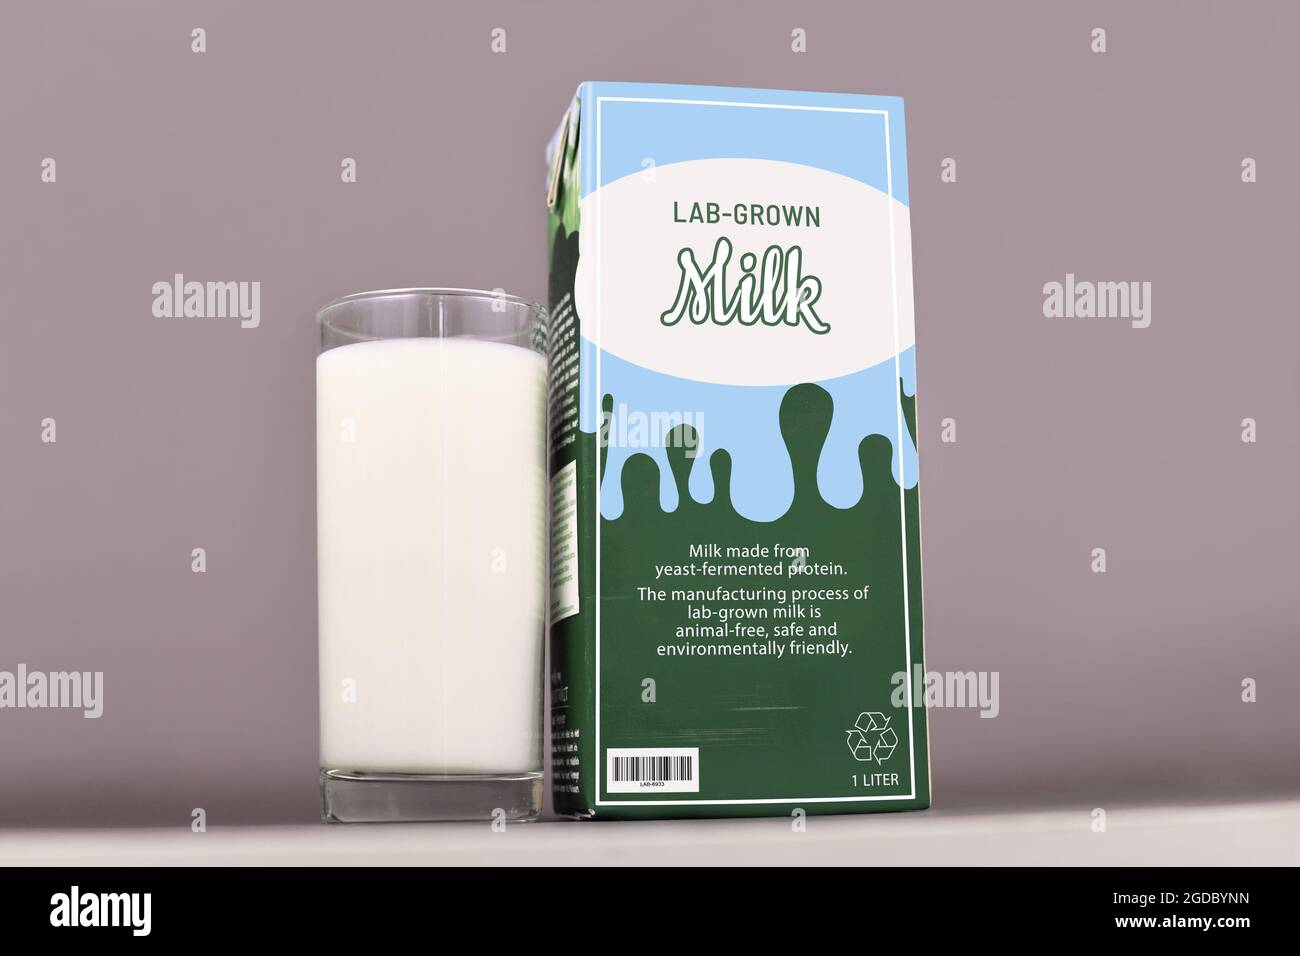 Concepto para la leche cultivada en laboratorio a partir de la producción lechera artificial cultivada utilizando proteínas de leche reproducidas. Cartón con etiqueta y vaso para beber Foto de stock